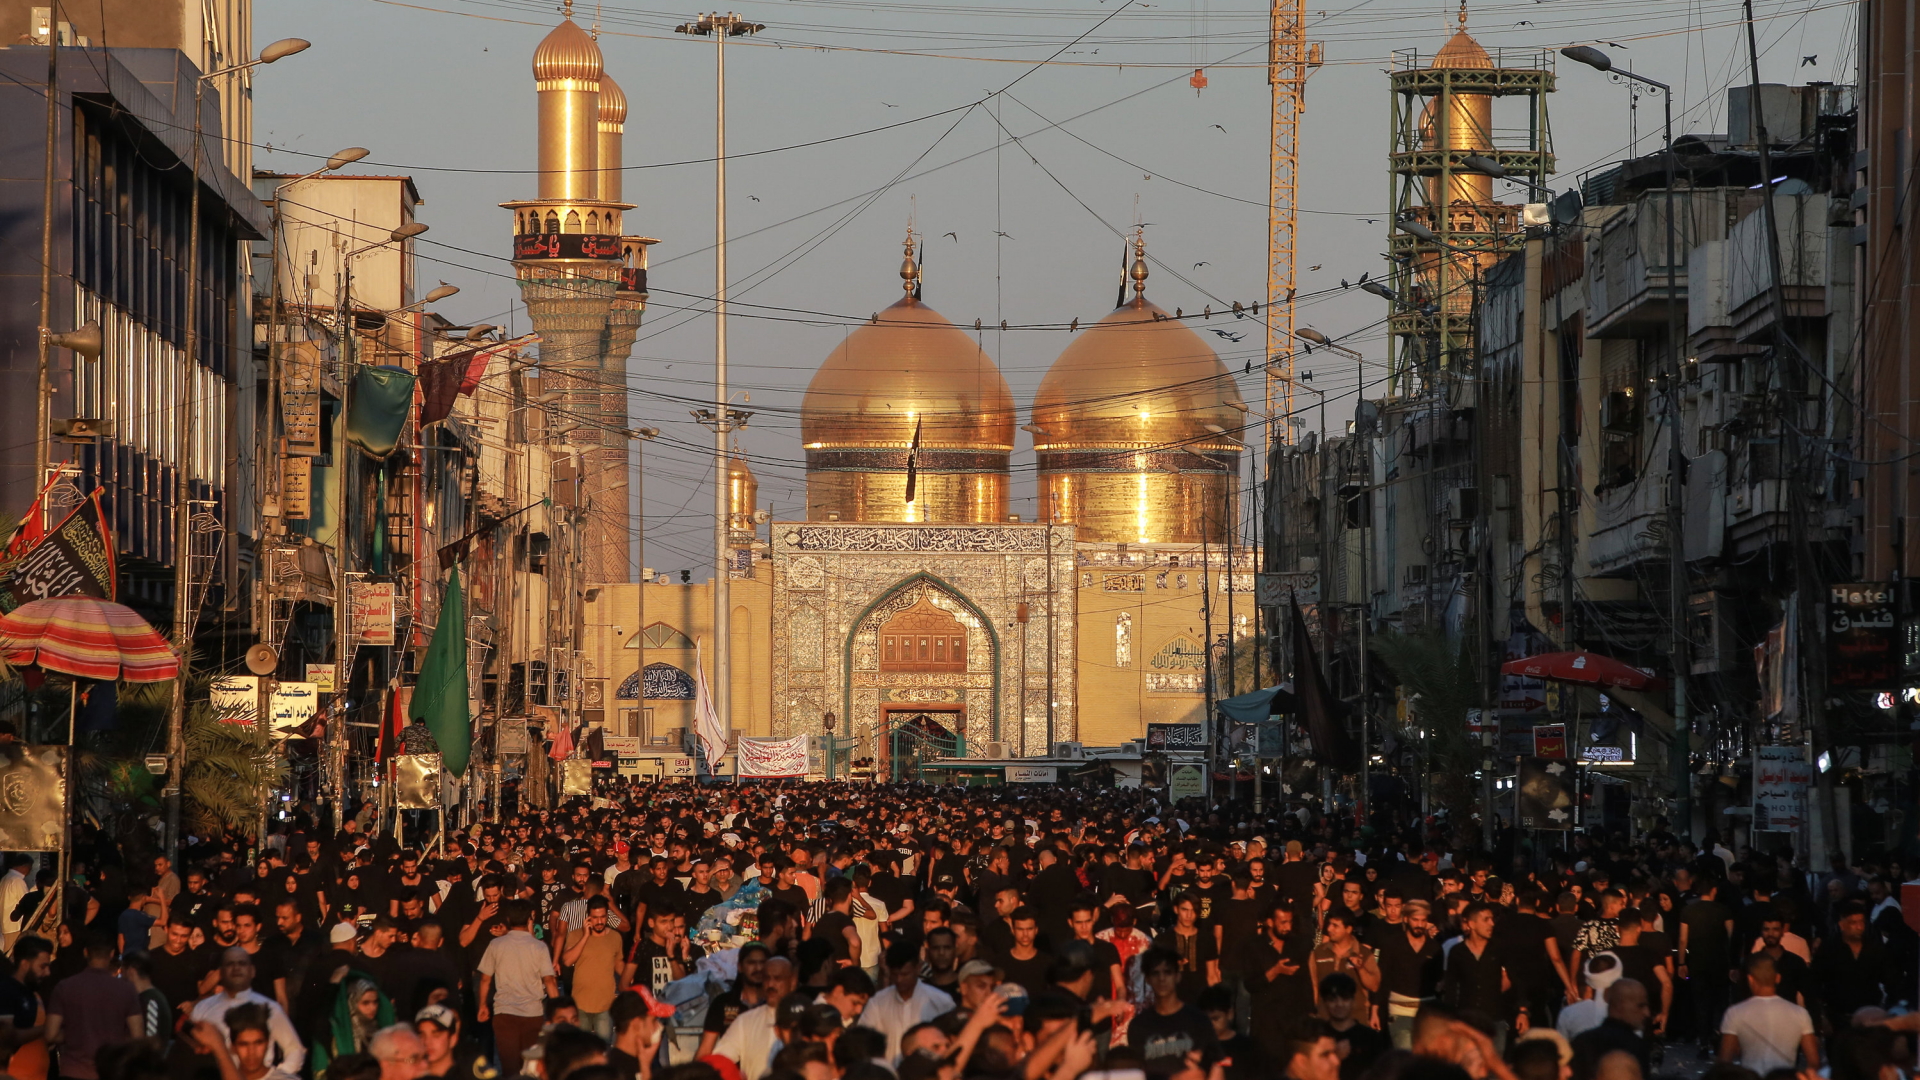 Schiitische Muslime nehmen an einer rituellen Zeremonie am Tag der Ashura vor der "Musa ibn Ja'far al-Kazim-Moschee" im Stadtteil Kadhimiya teil. | dpa